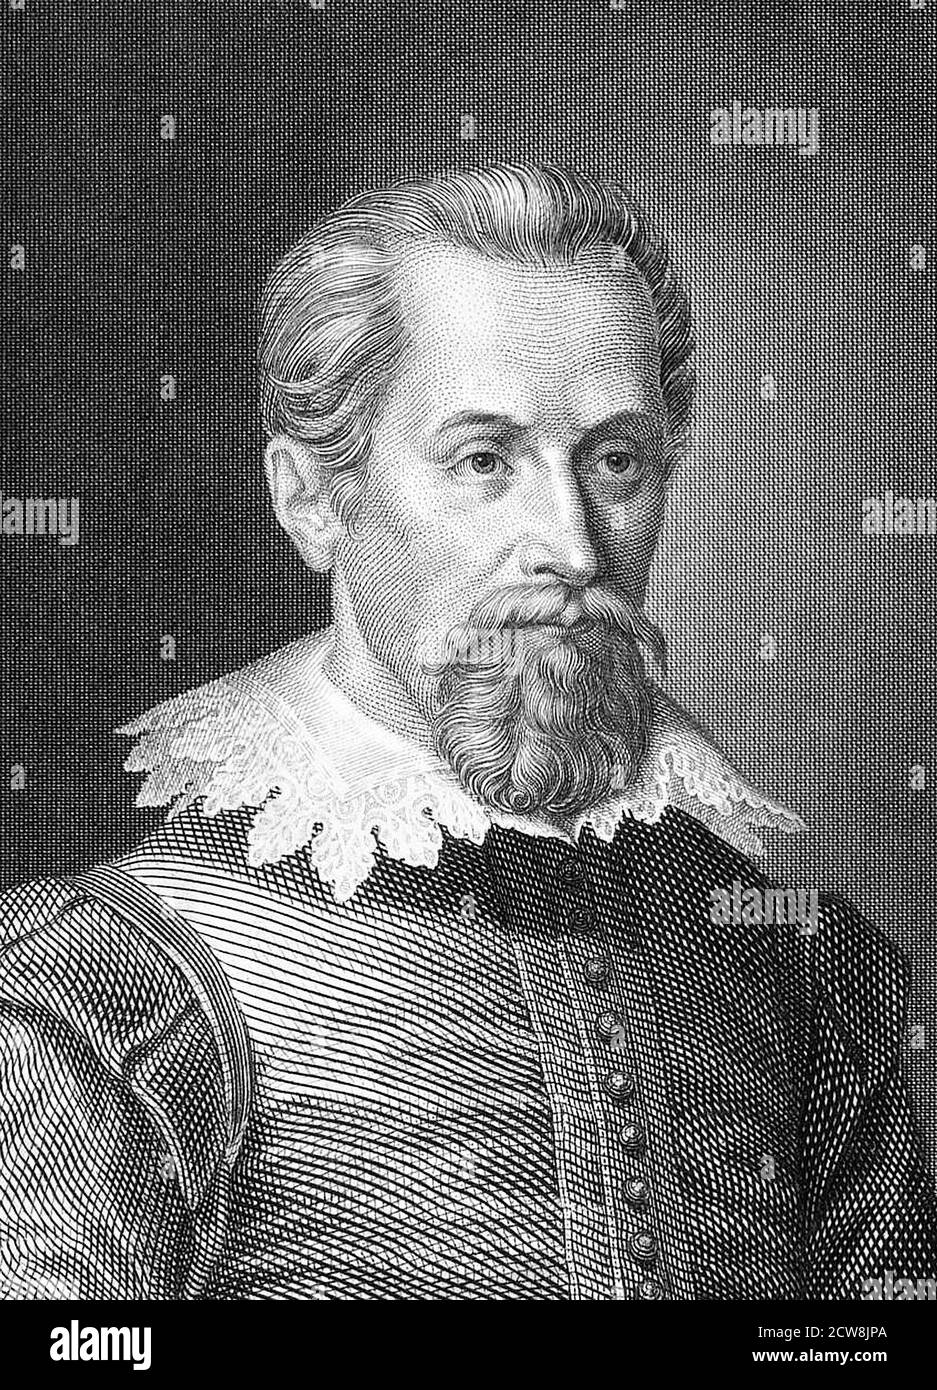 Portrait de l'astronome allemand Johannes Kepler (1571-1630), gravure du XIXe siècle Banque D'Images